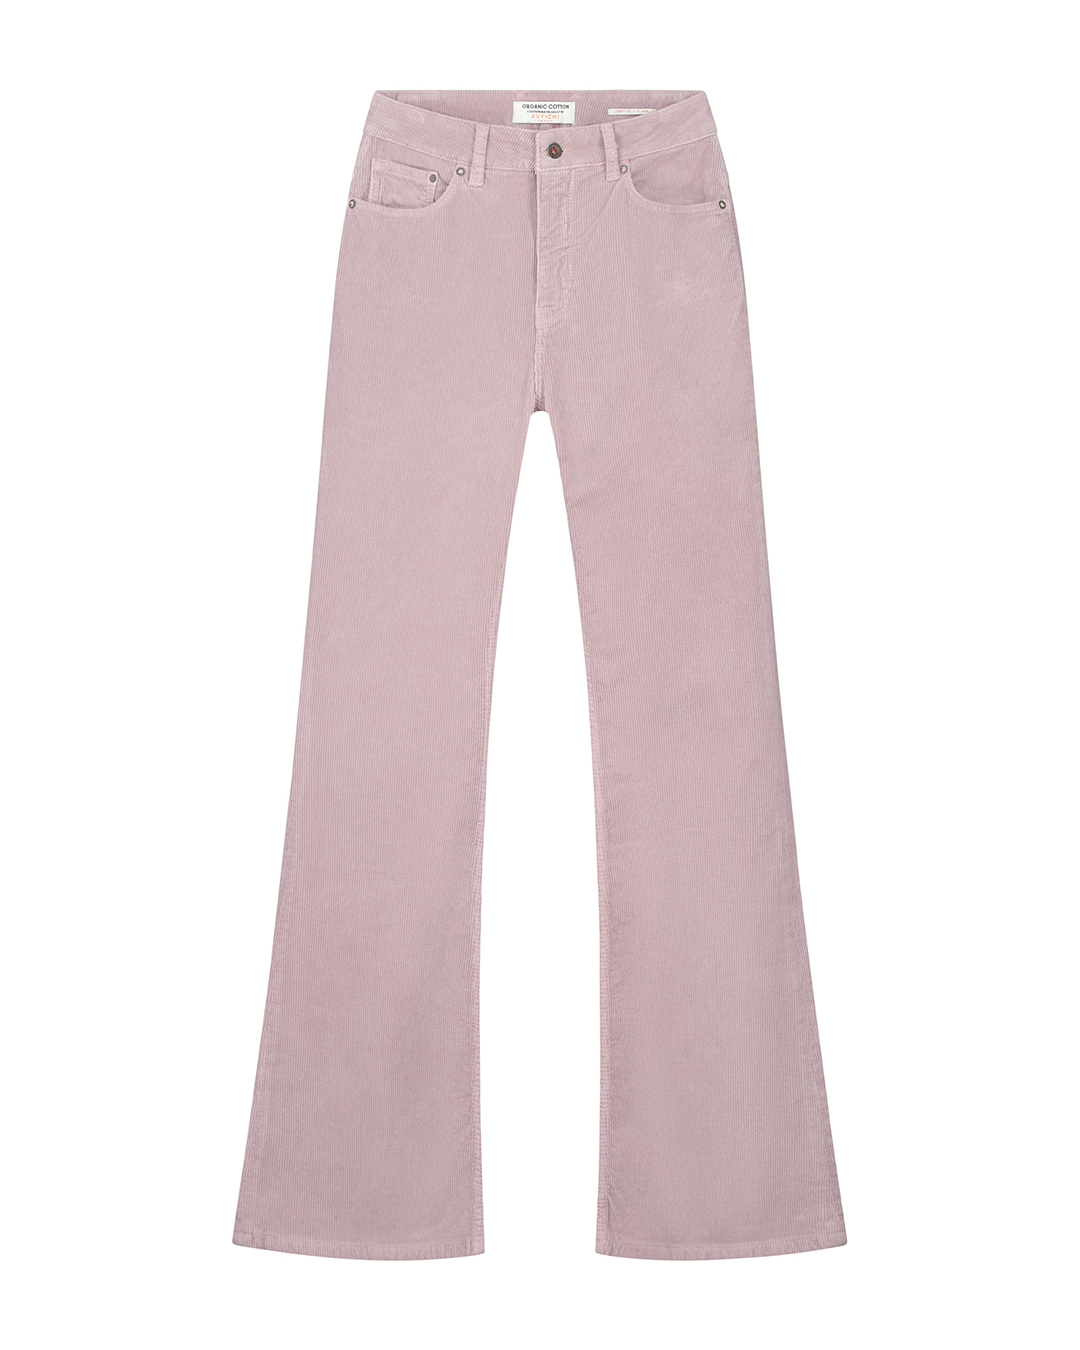 Pantalon Lisette - velours - lavender grey - coton biologique - Kuyichi 05